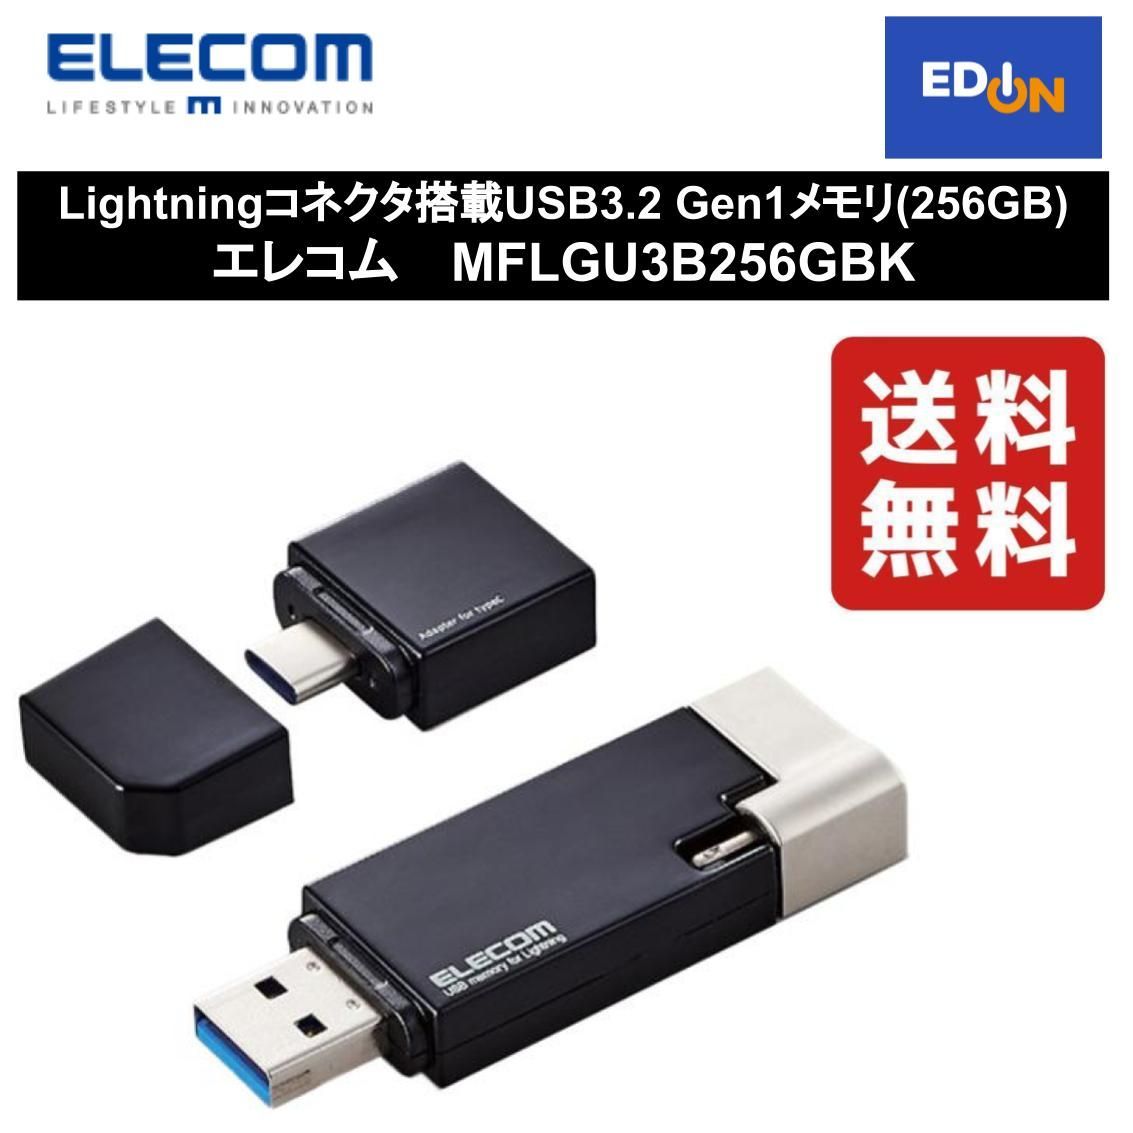 エレコム Lightning USBメモリ USB3.2(Gen1) 16GB Lightningコネクタ搭載 USB3.0対応 ライトニング  Type-C変換アダプタ付 ブラック Windows11 対応 MF-LGU3B016GBK